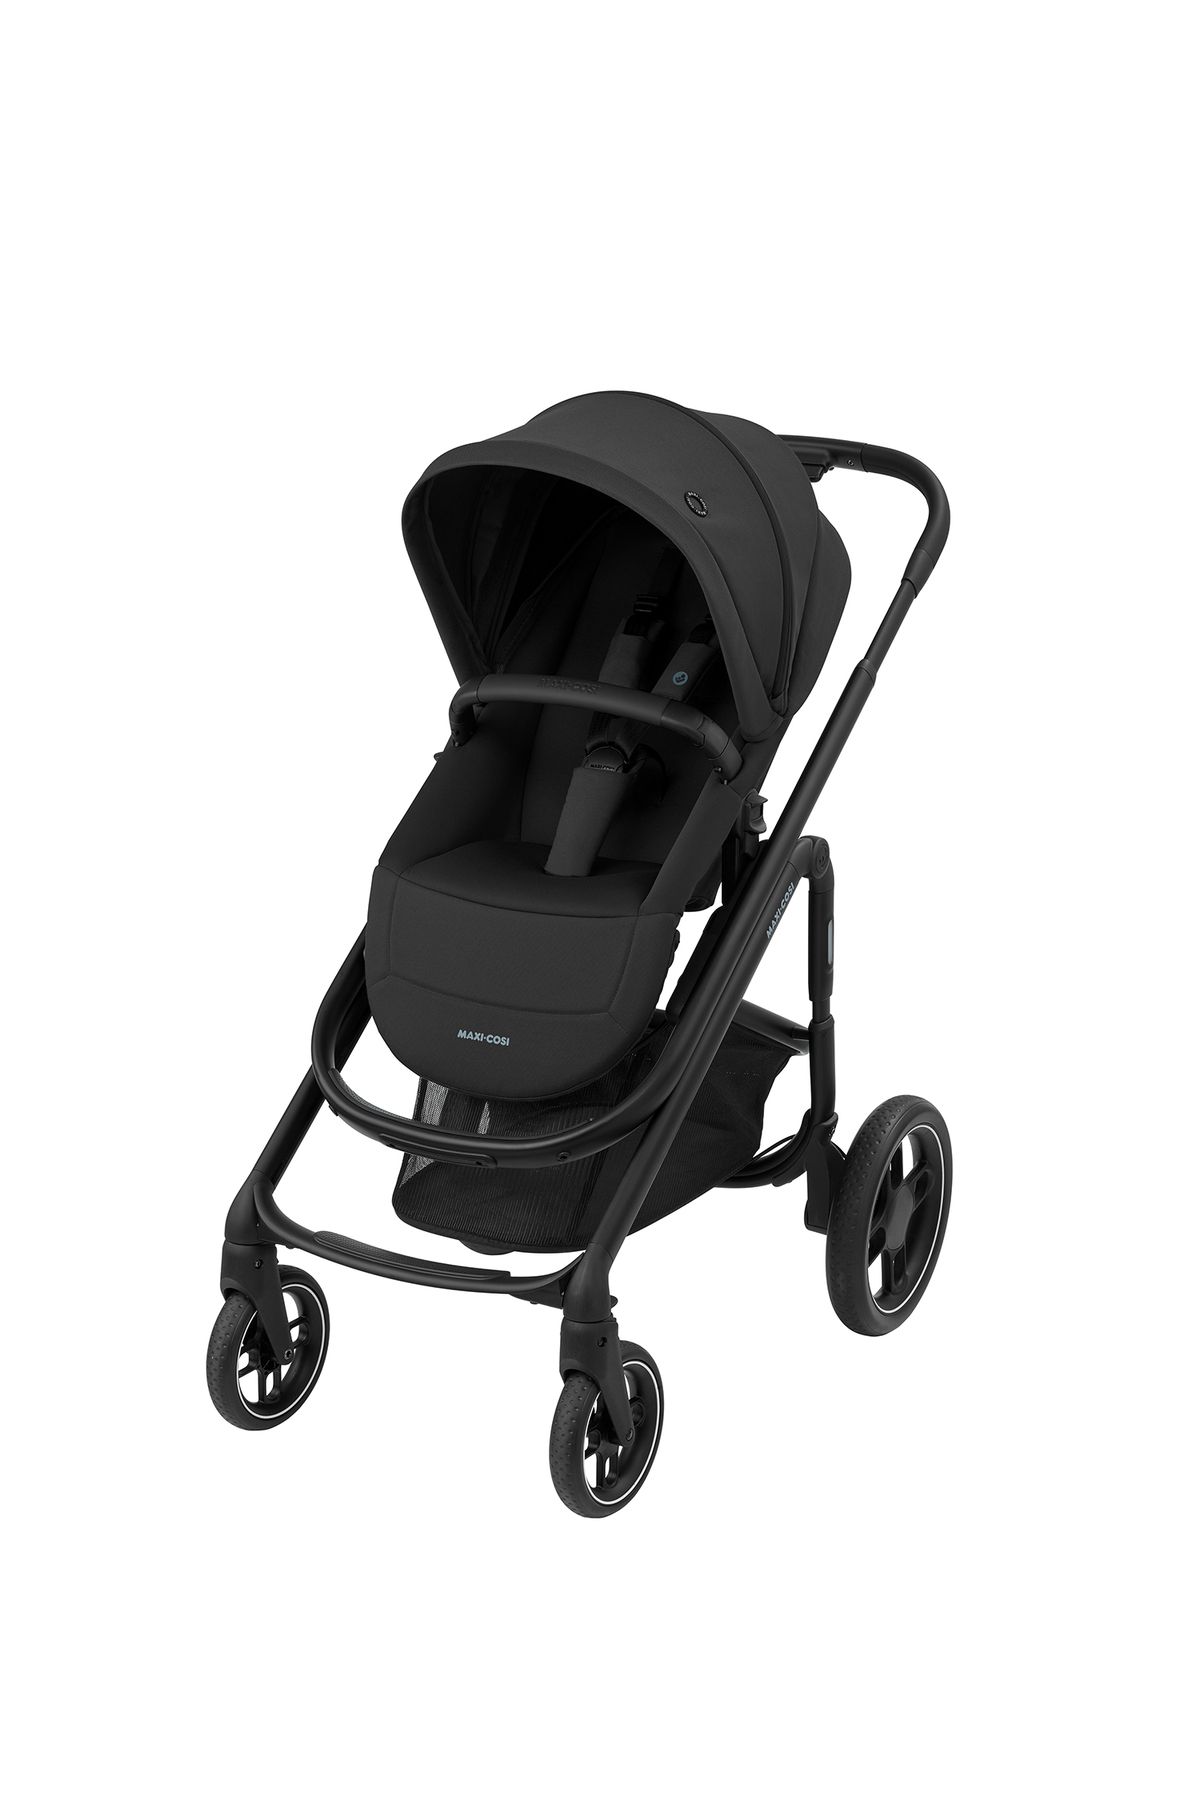 Maxi-Cosi Plaza Ekstra Portbebeli Doğumdan İtibaren Kullanılabilen Essential Black Bebek Arabası